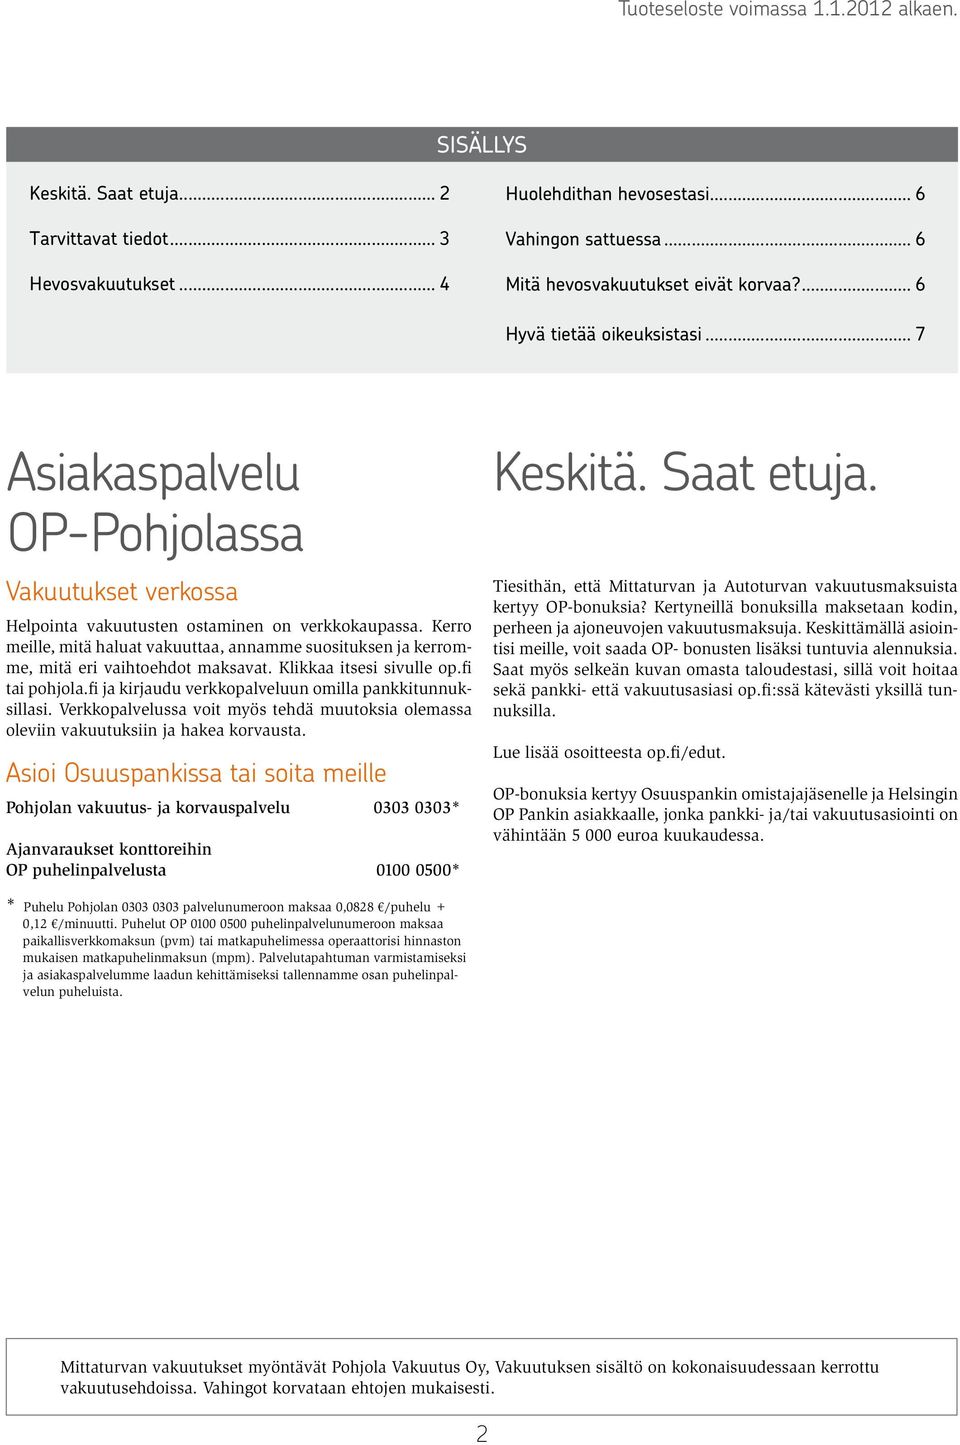 Kerro meille, mitä haluat vakuuttaa, annamme suosituksen ja kerromme, mitä eri vaihtoehdot maksavat. Klikkaa itsesi sivulle op.fi tai pohjola.fi ja kirjaudu verkkopalveluun omilla pankkitunnuksillasi.